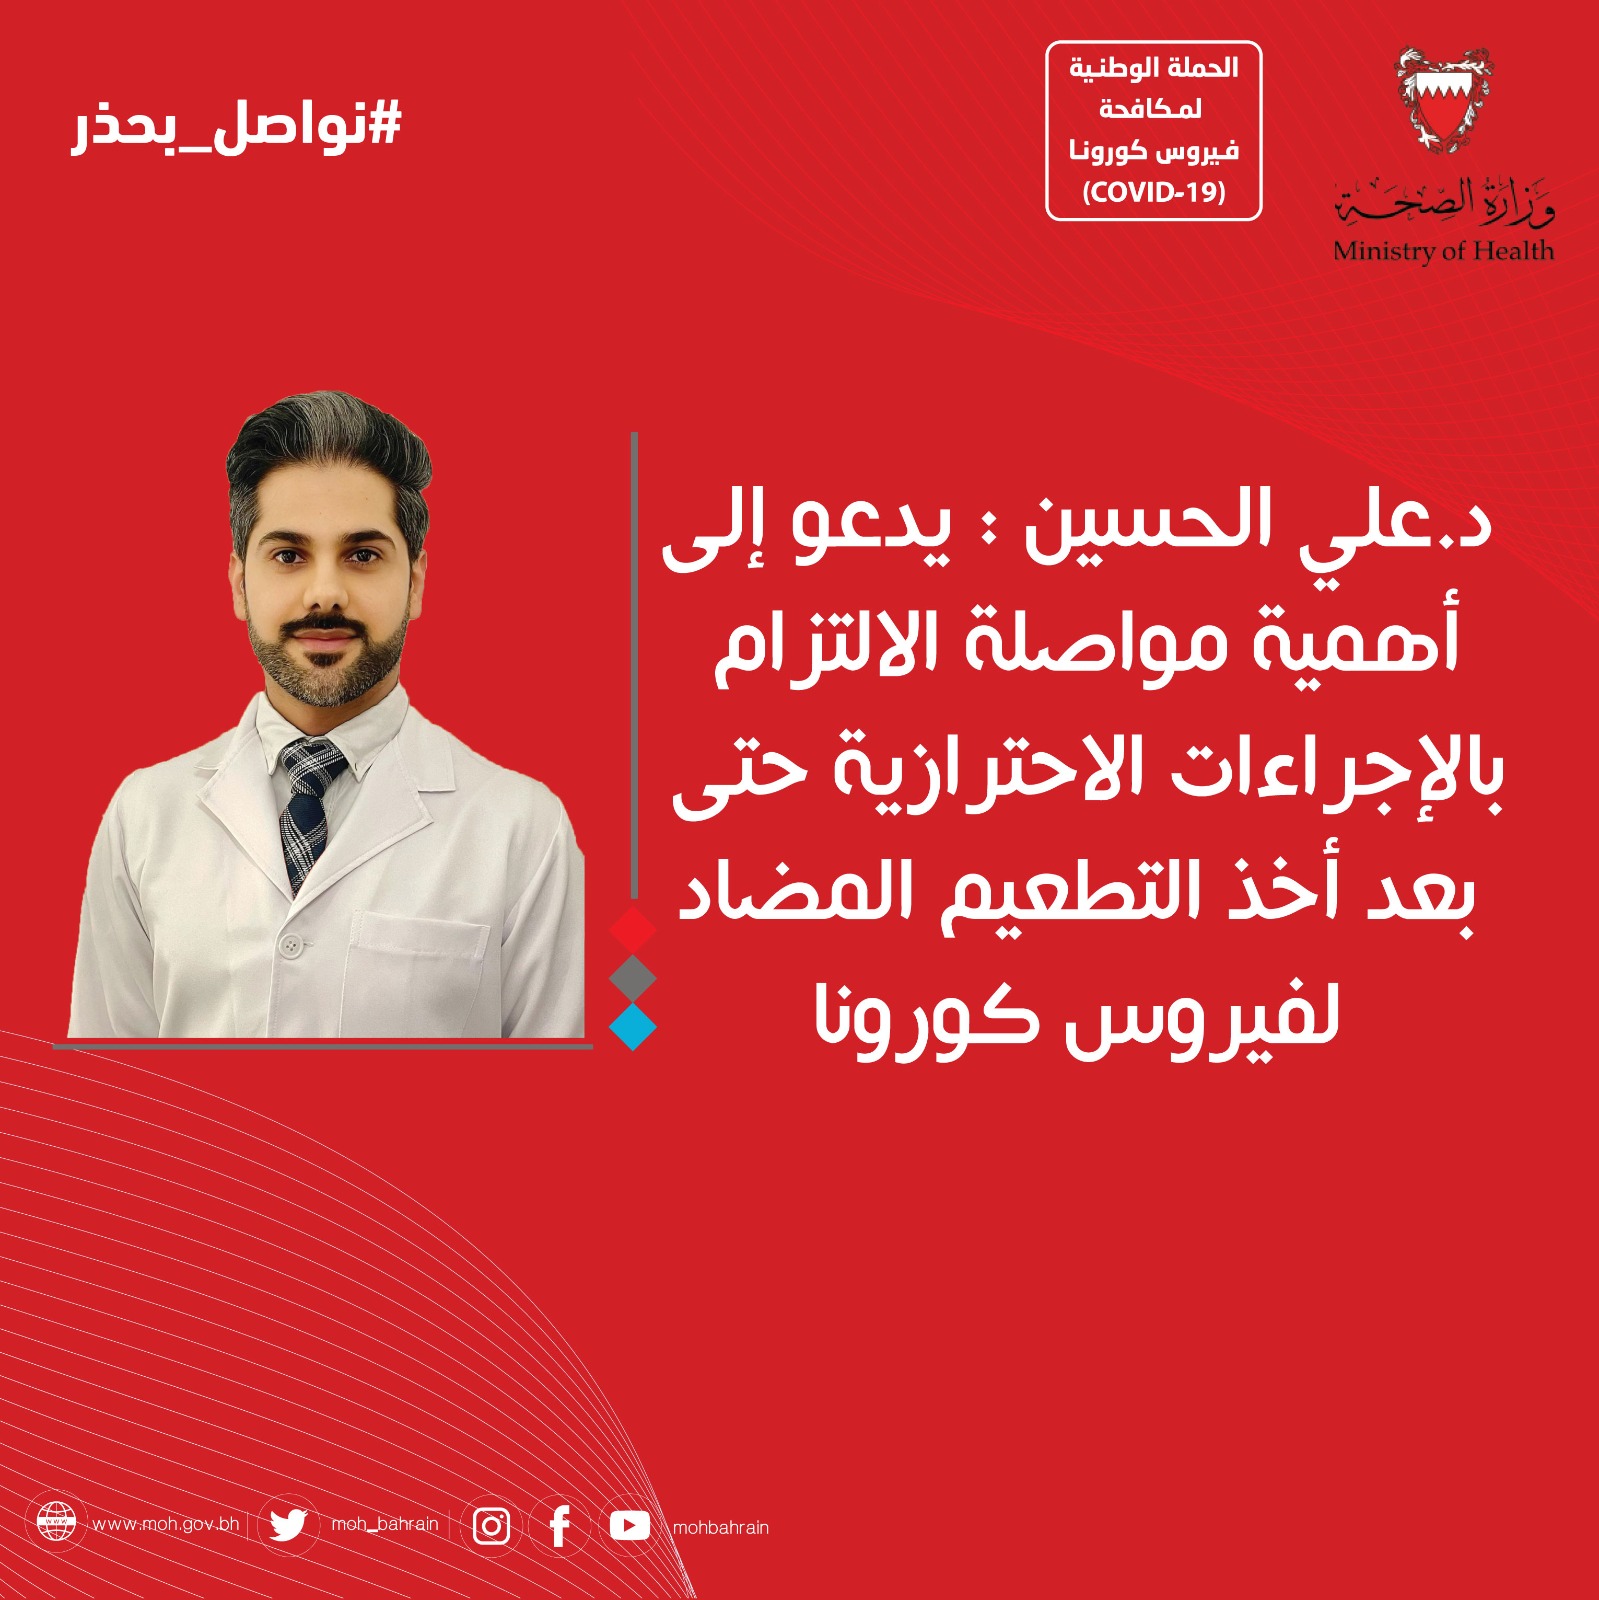 د. علي محمود الحسين يدعو إلى أهمية مواصلة الالتزام بالإجراءات الاحترازية حتى بعد أخذ التطعيم المضاد لفيروس "كورونا"